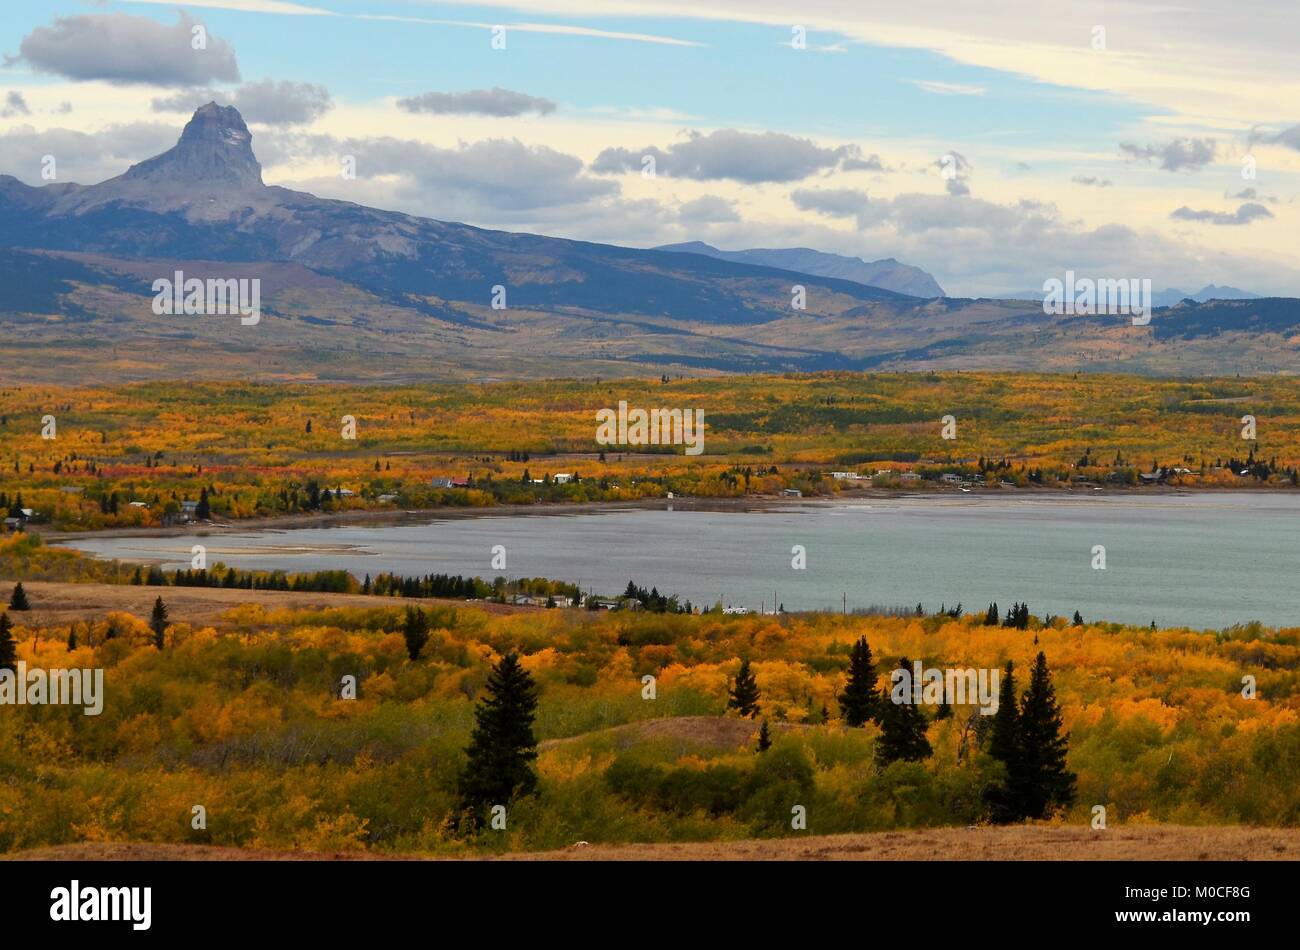 Un pequeño lago para pescar, situado cerca de la montaña Jefe en Montana, EE.UU., con un colorido increíble vista otoñal Foto de stock